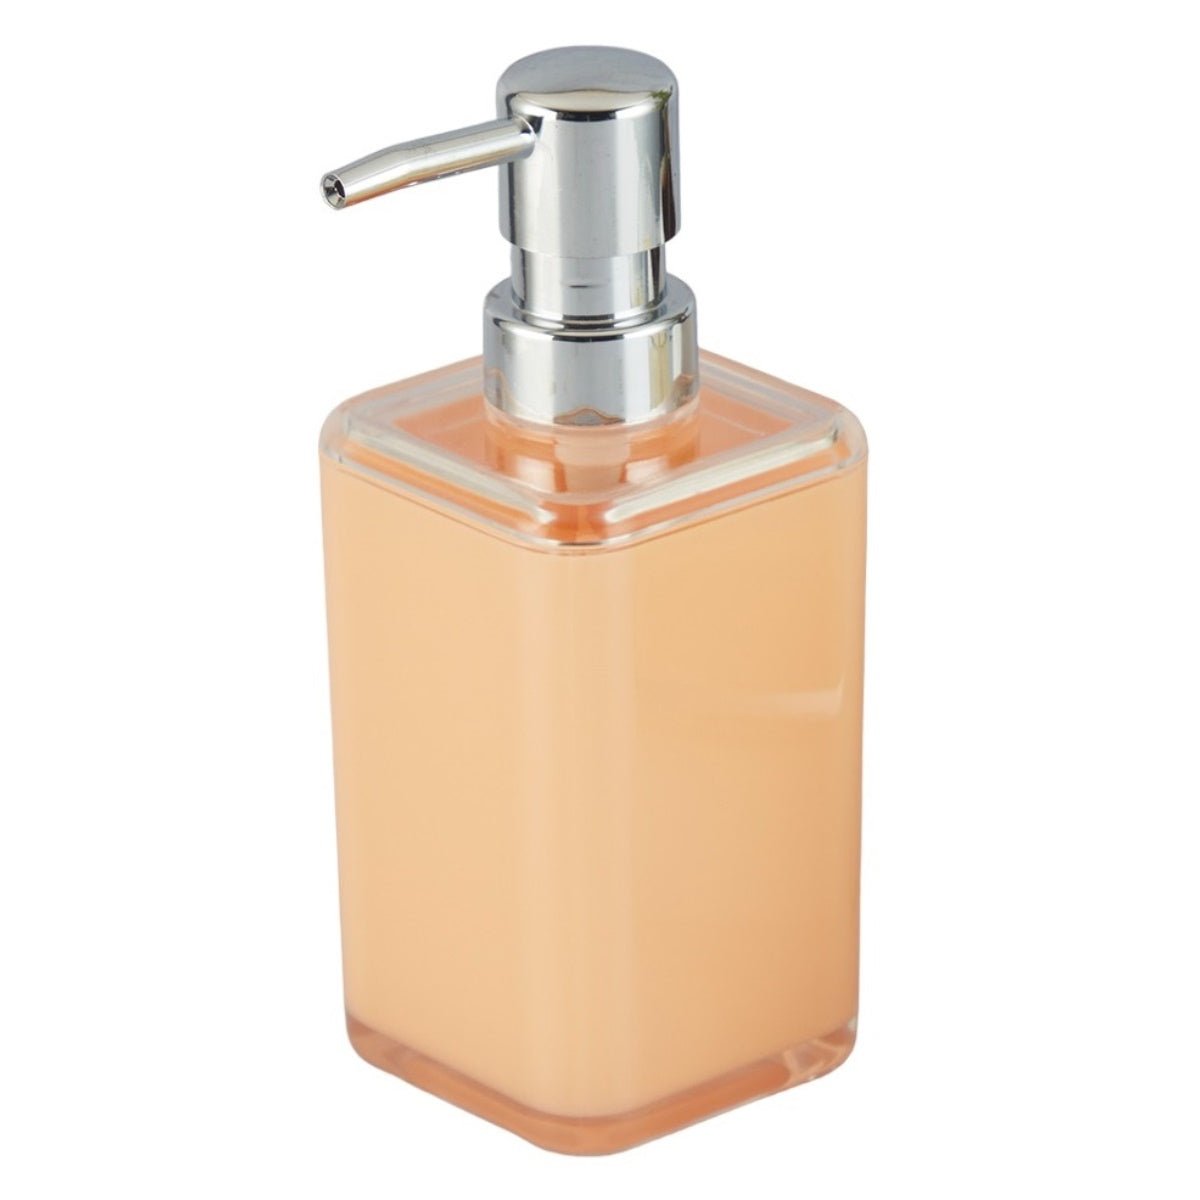 Acrylic Soap Dispenser Pump for Bathroom for Bath Gel, Lotion, Shampoo (10016)